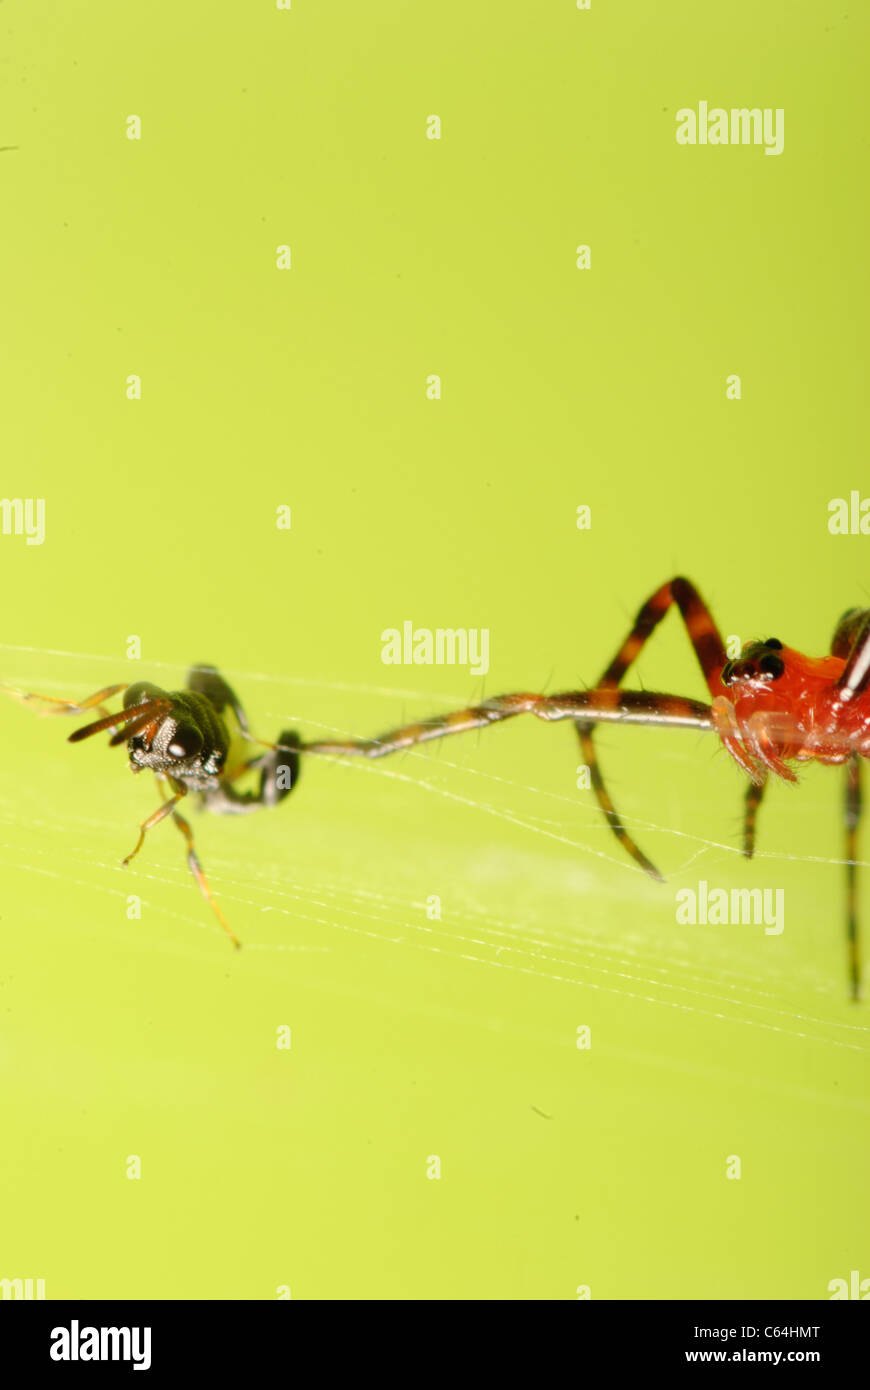 Proie araignée insecte macro shot Banque D'Images